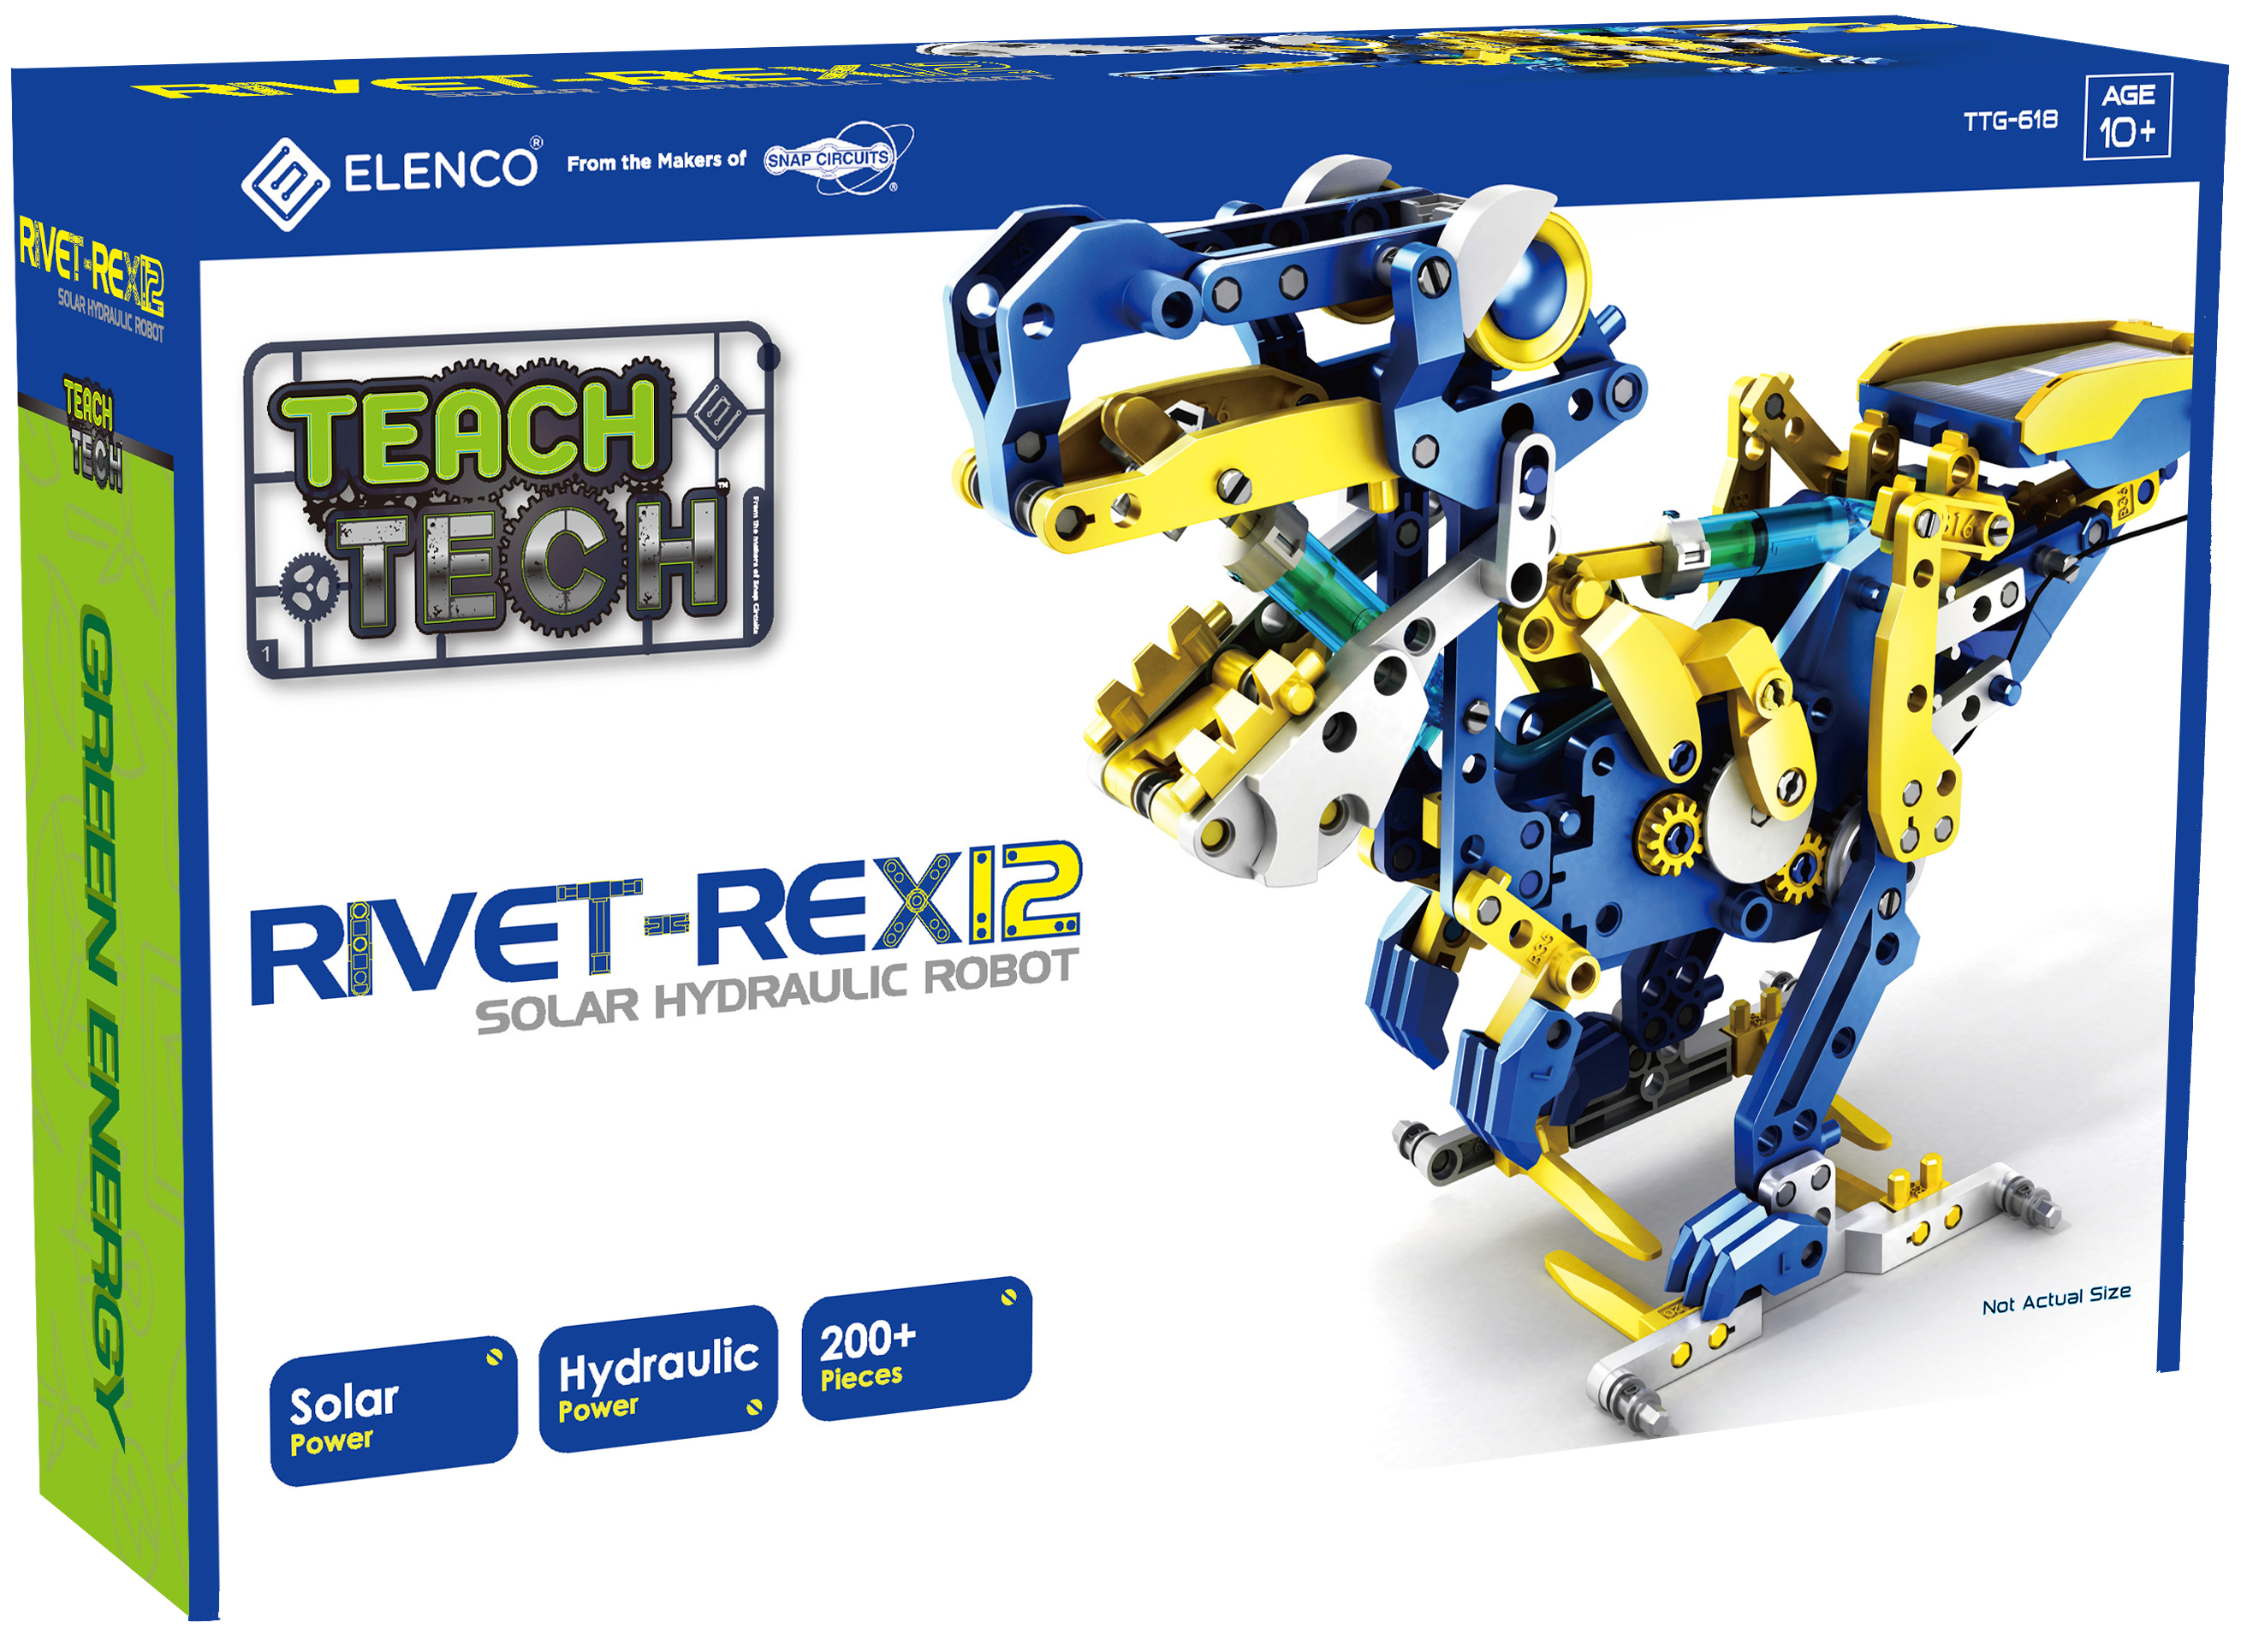 TEACH TECH™ Rivet-Rex12 Solar Hydraulic Robot - image 1 of 12